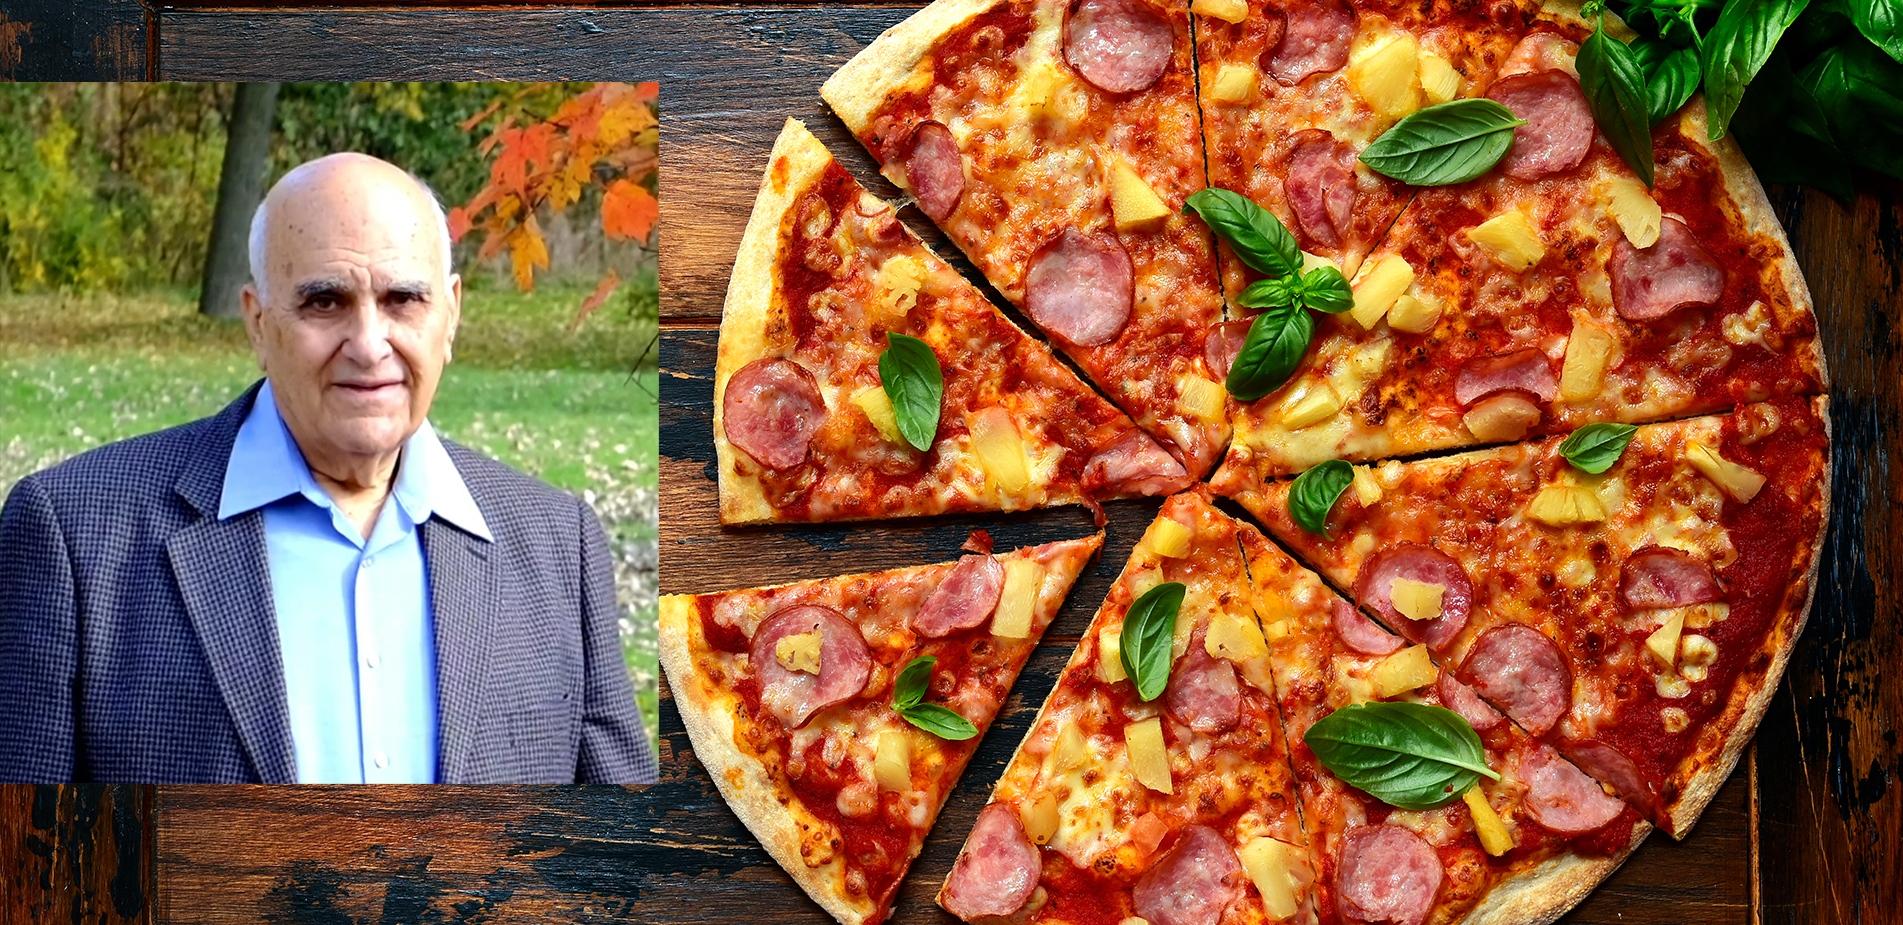 Σαμ Πανόπουλος: Ο Έλληνας που δημιούργησε την πίτσα που διχάζει - Newsbeast